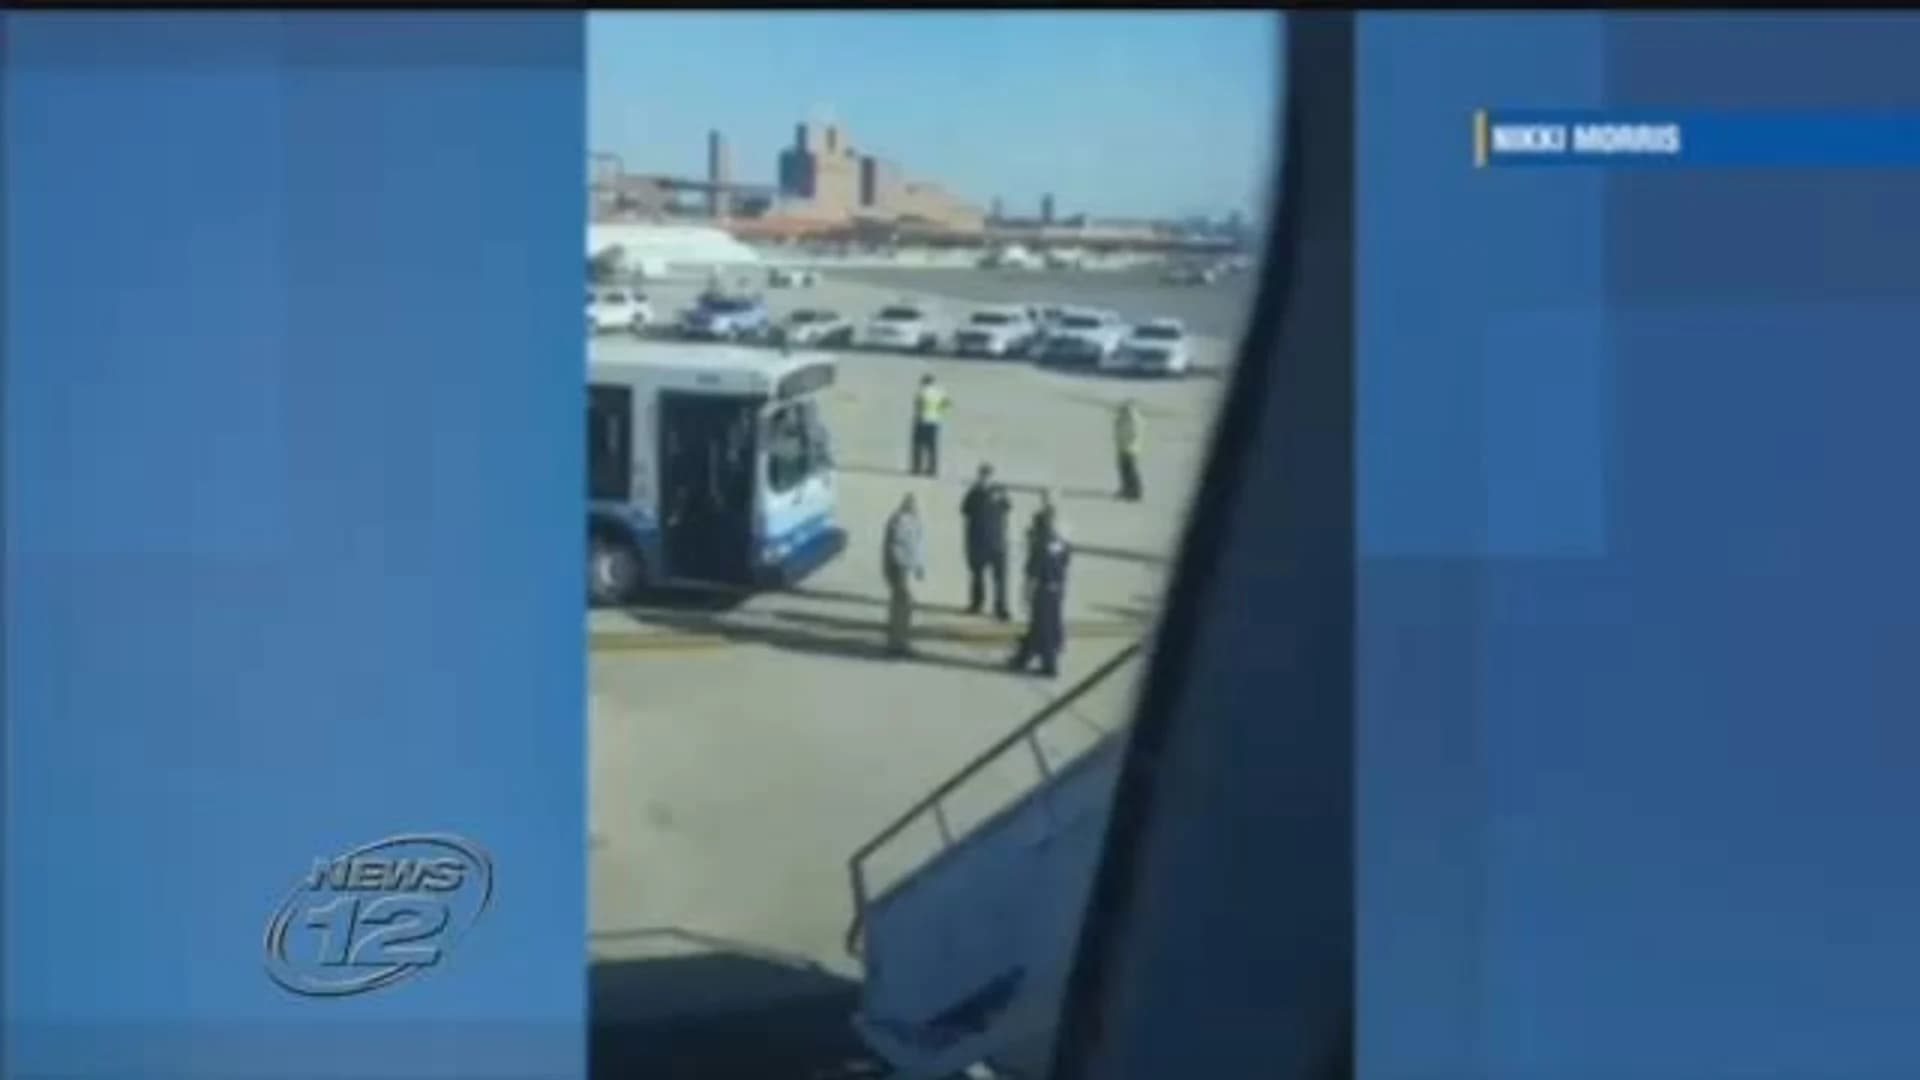 Officials: Item at Newark Liberty International Airport deemed not suspicious